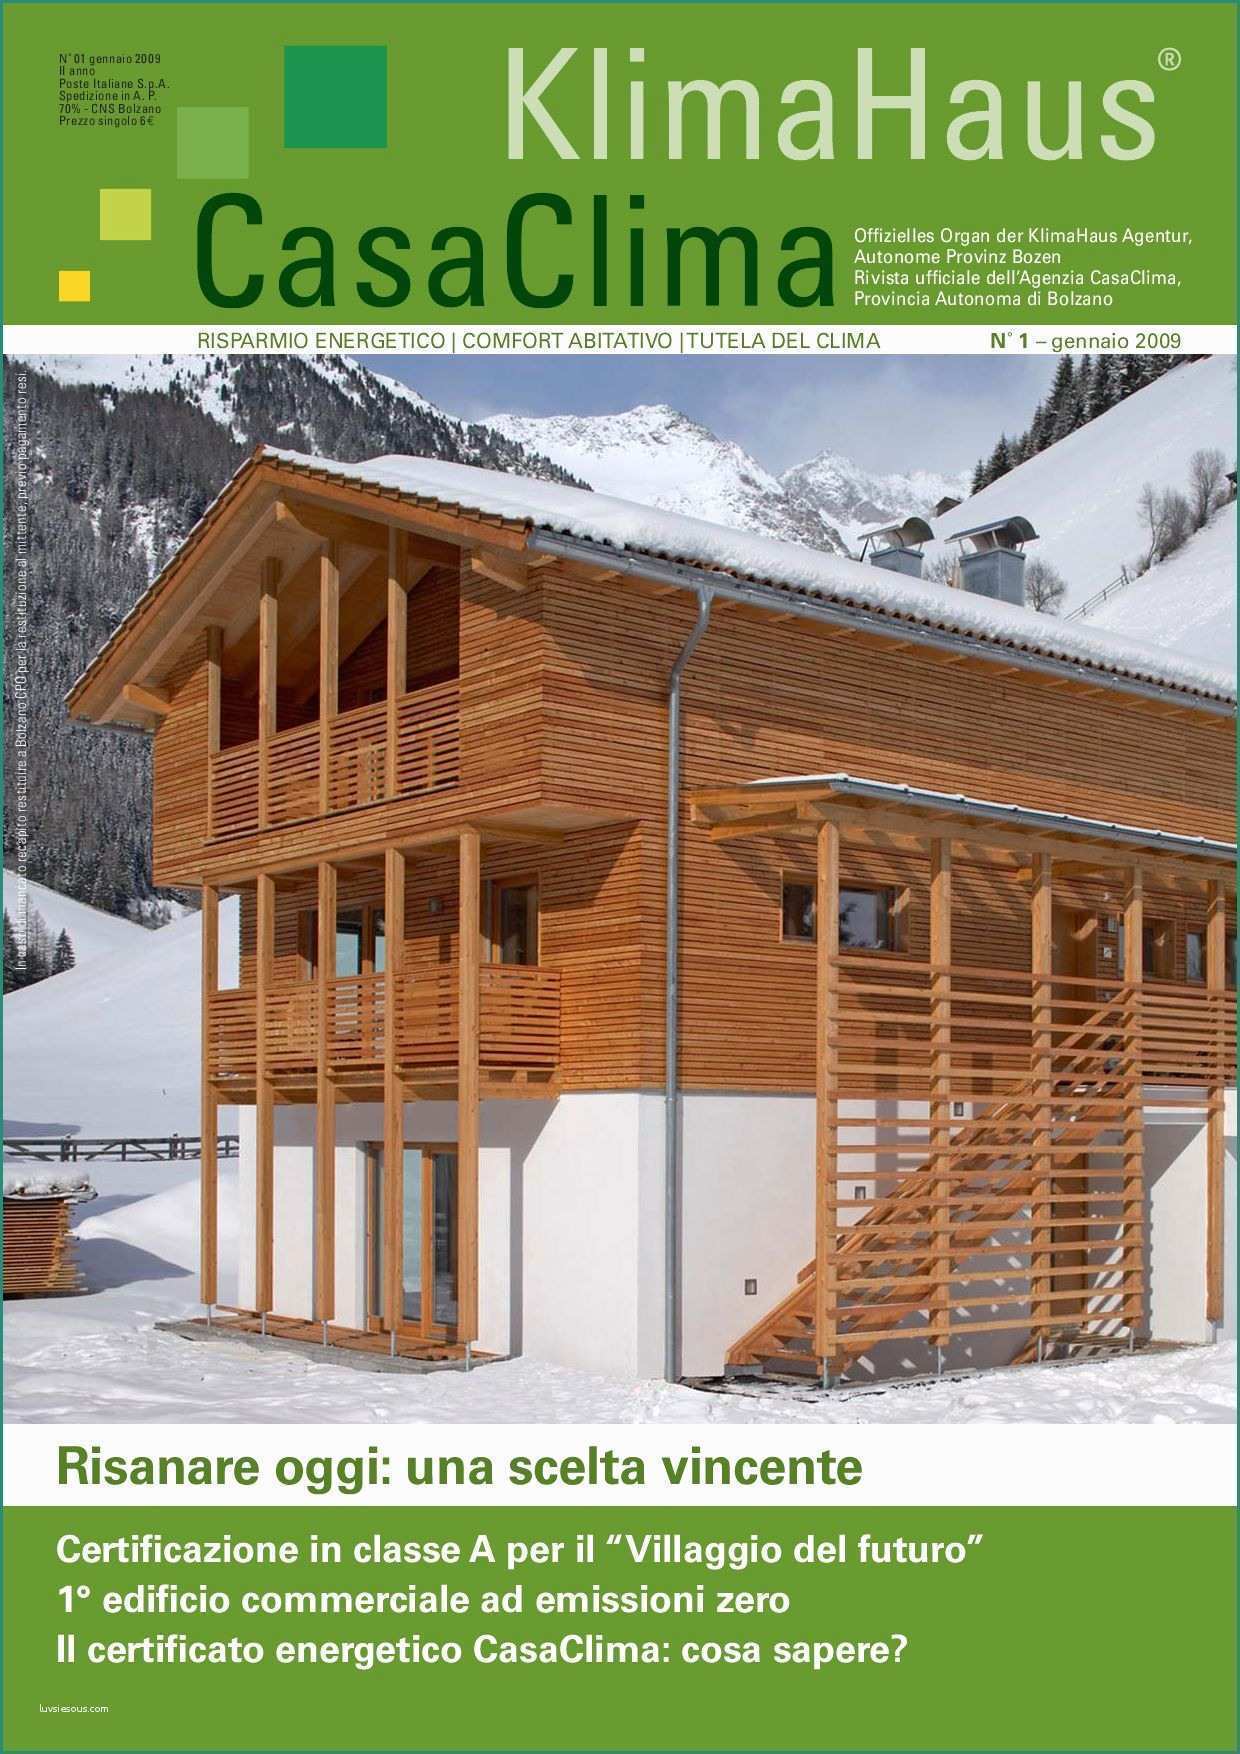 Monoblocchi Abitativi Usati E Klimahaus Casaclima Nr1 2009 by Cris Referencia Integra§£o